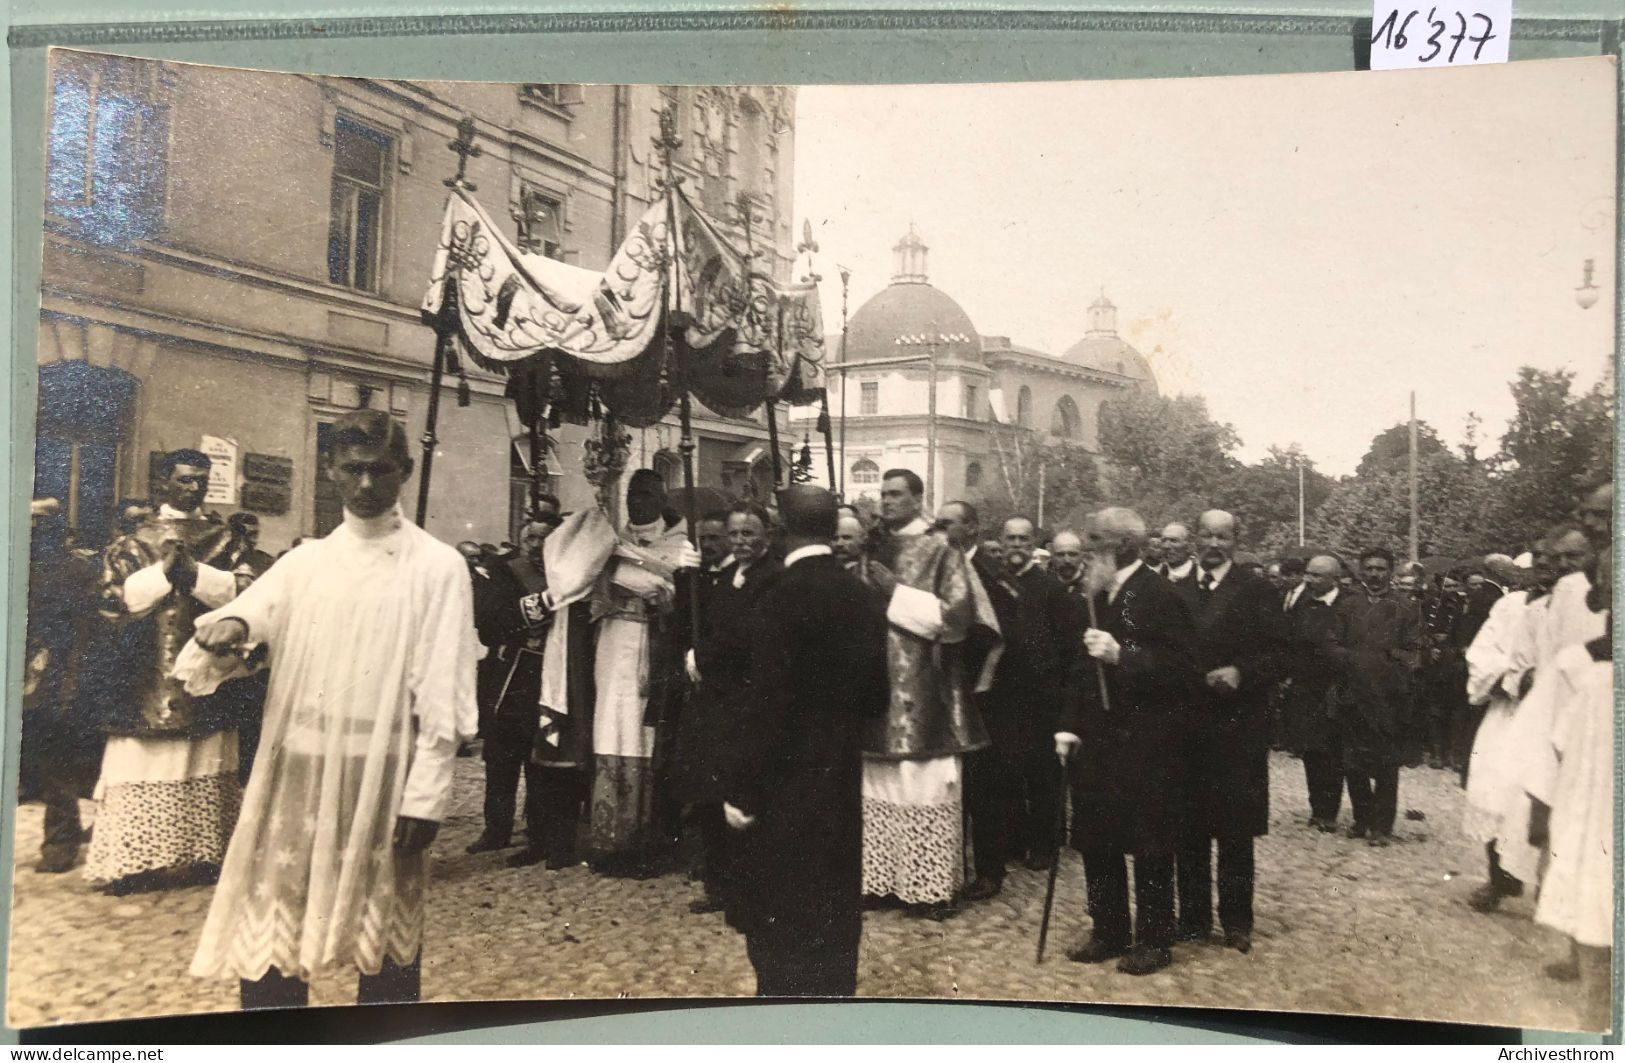 Wilno : 1917 Procession Autour De La Cathédrale De Vilnius (16'377) - Litauen